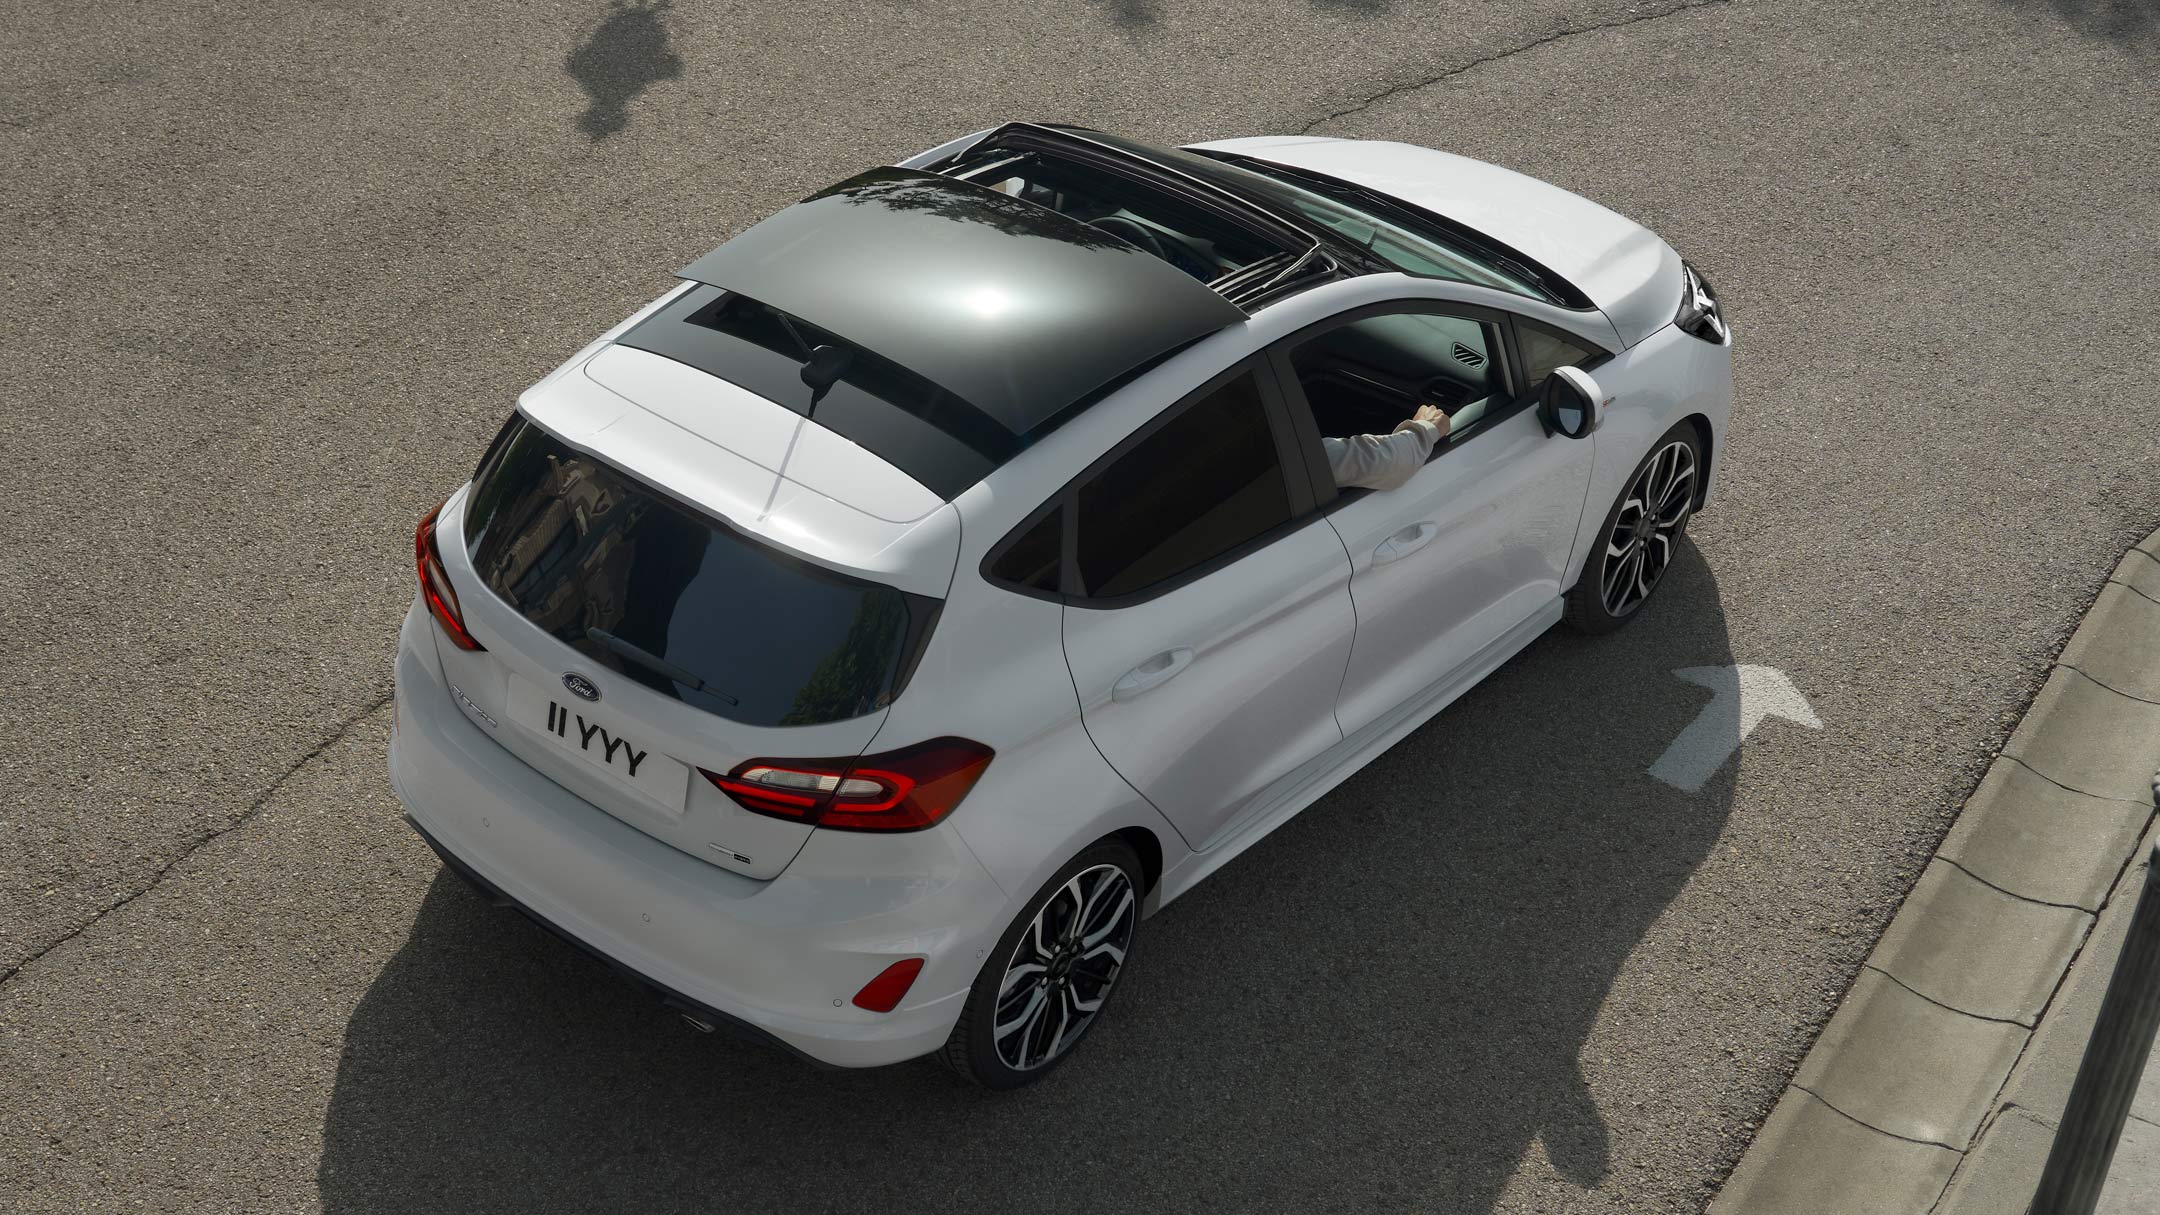 Ford Fiesta in Weiß. Blick von oben auf das Panorama-Schiebedach, auf einer Straße fahrend.